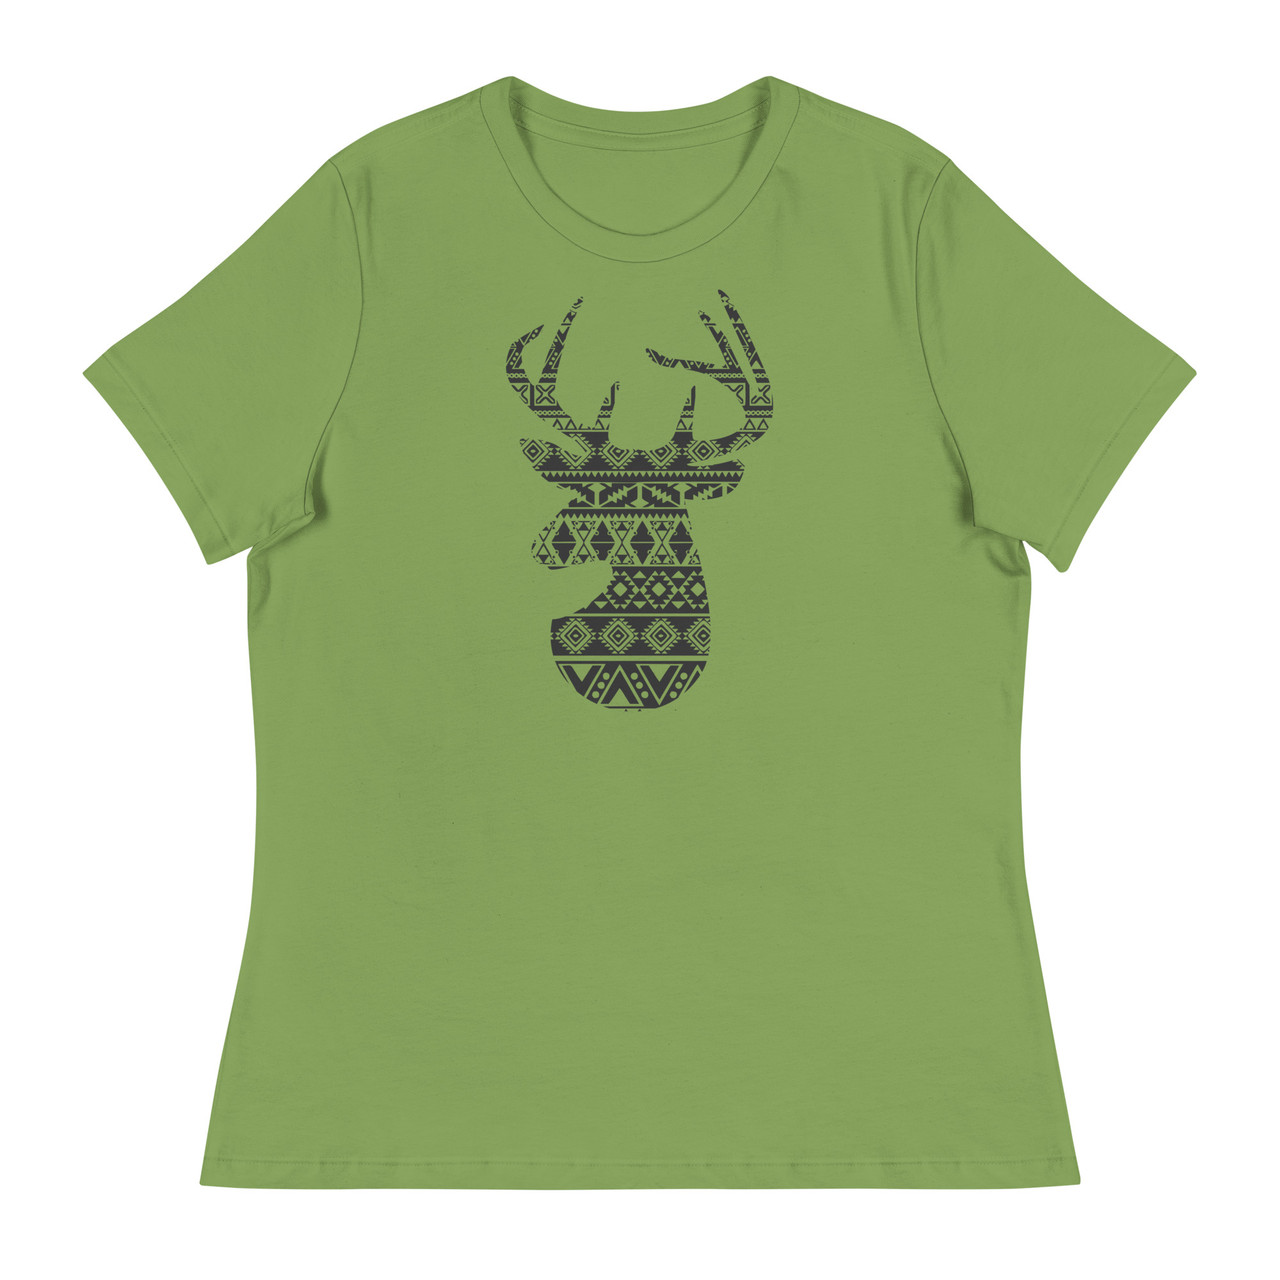 Deer Silhouette Women's Relaxed T-Shirt - Bella + Canvas 6400 